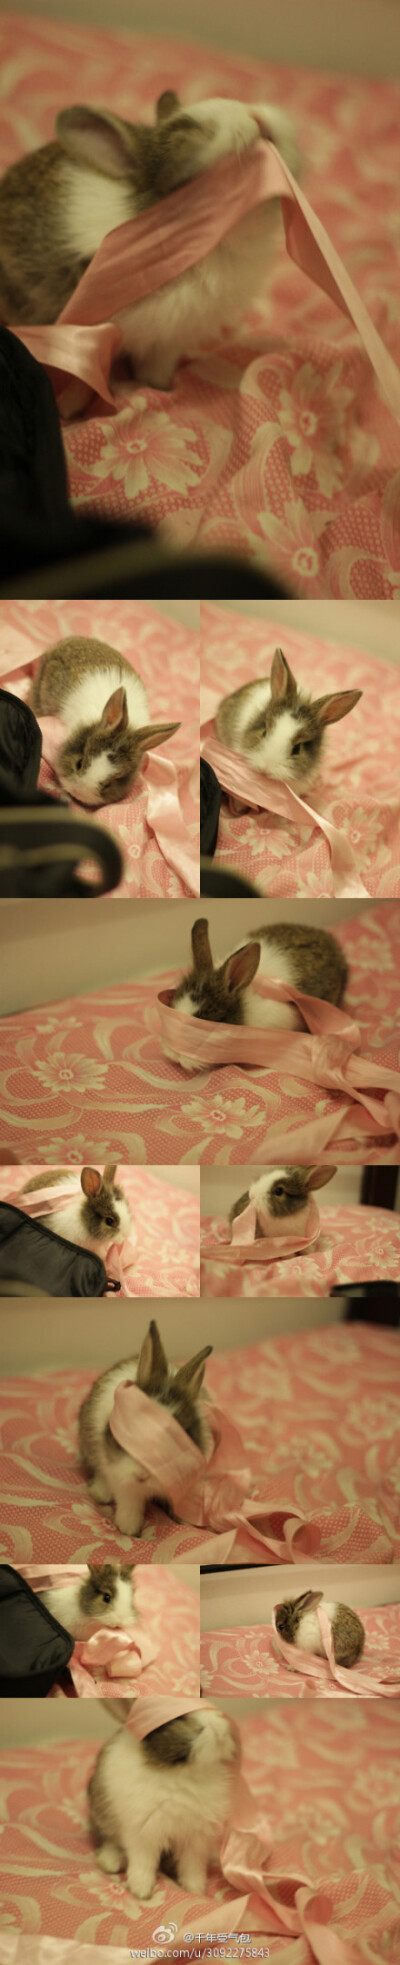 我是一只小兔叽，叽叽叽叽叽叽叽~【来自微博】